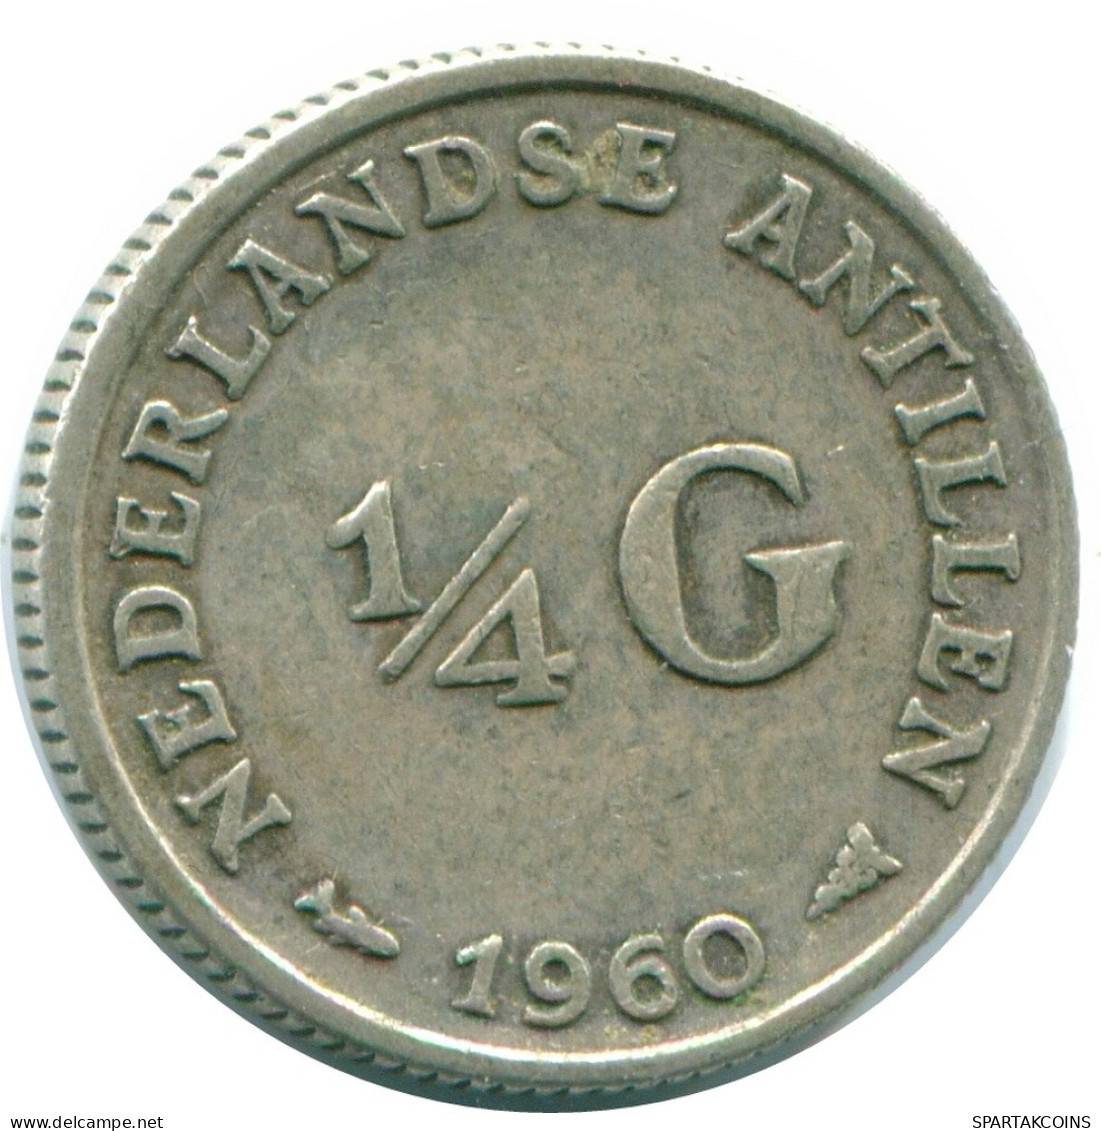 1/4 GULDEN 1960 NIEDERLÄNDISCHE ANTILLEN SILBER Koloniale Münze #NL11050.4.D.A - Antilles Néerlandaises